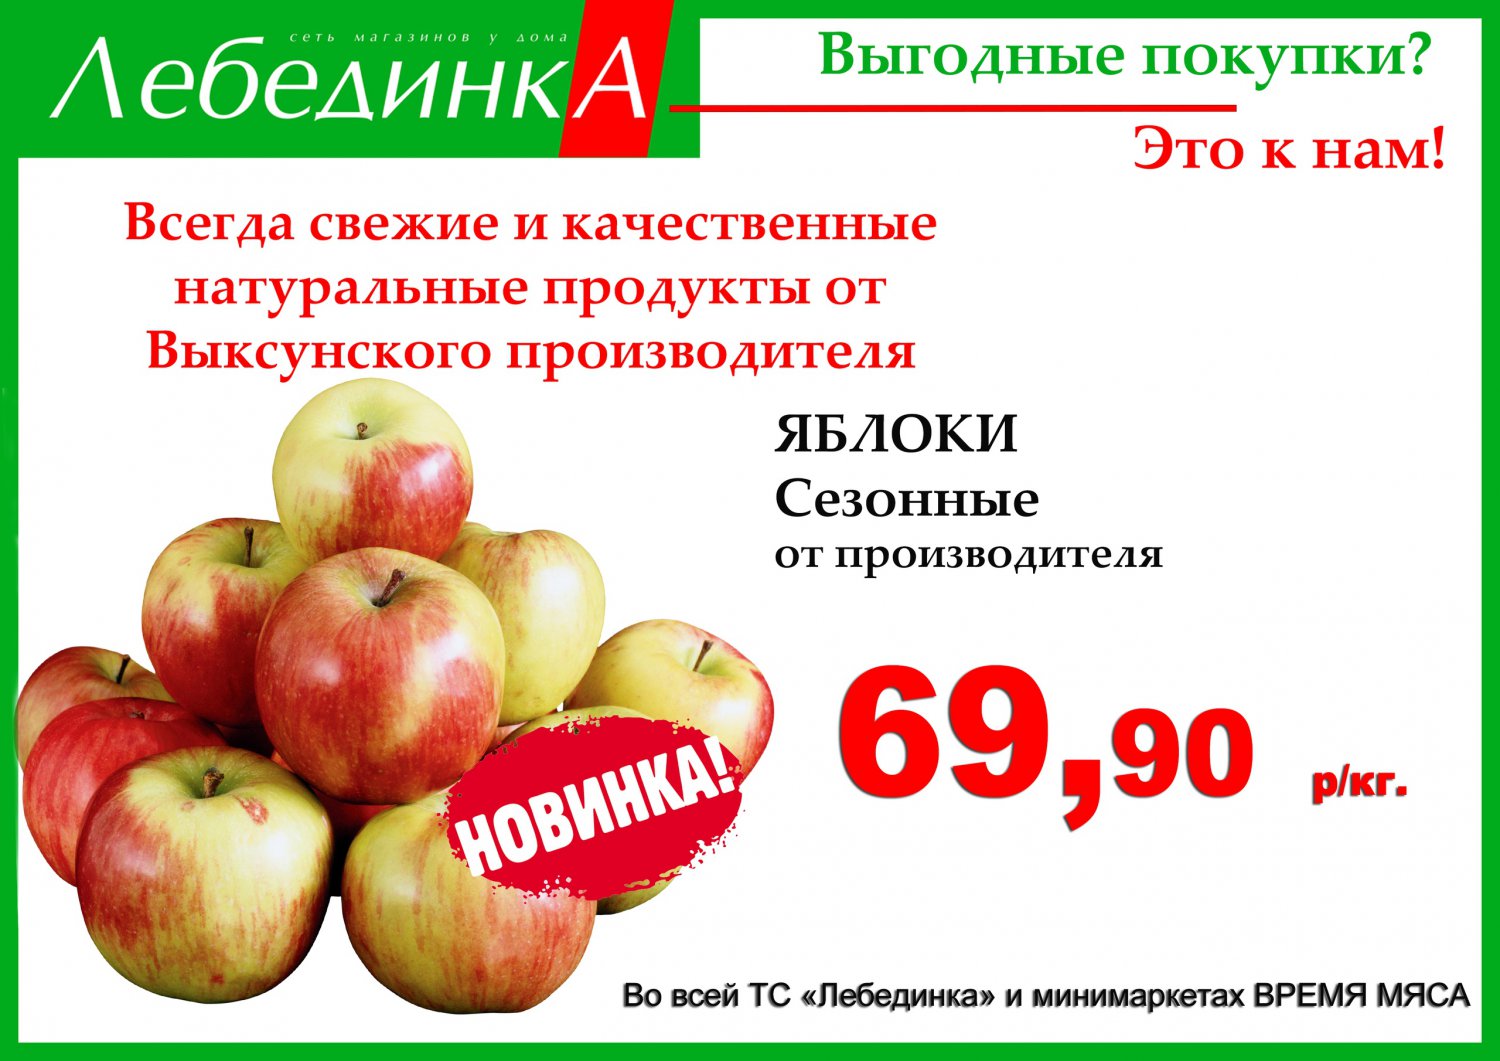 Сезонные яблоки появились на прилавках магазинов «Лебединка»